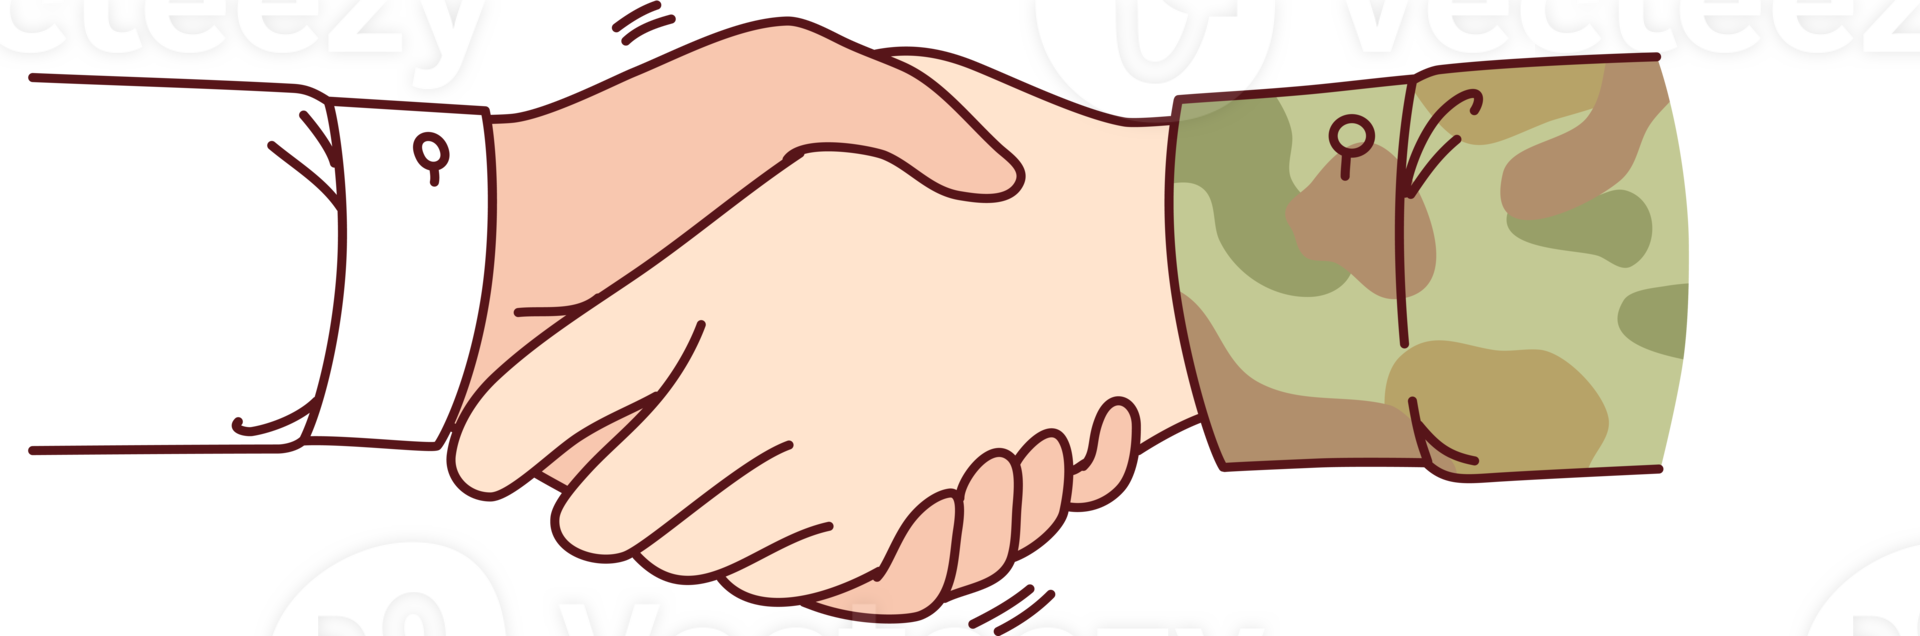 Handschlag zwischen Soldat und Zivilist symbolisieren Unterstützung Militär- nach Rückkehr von Feindseligkeiten png